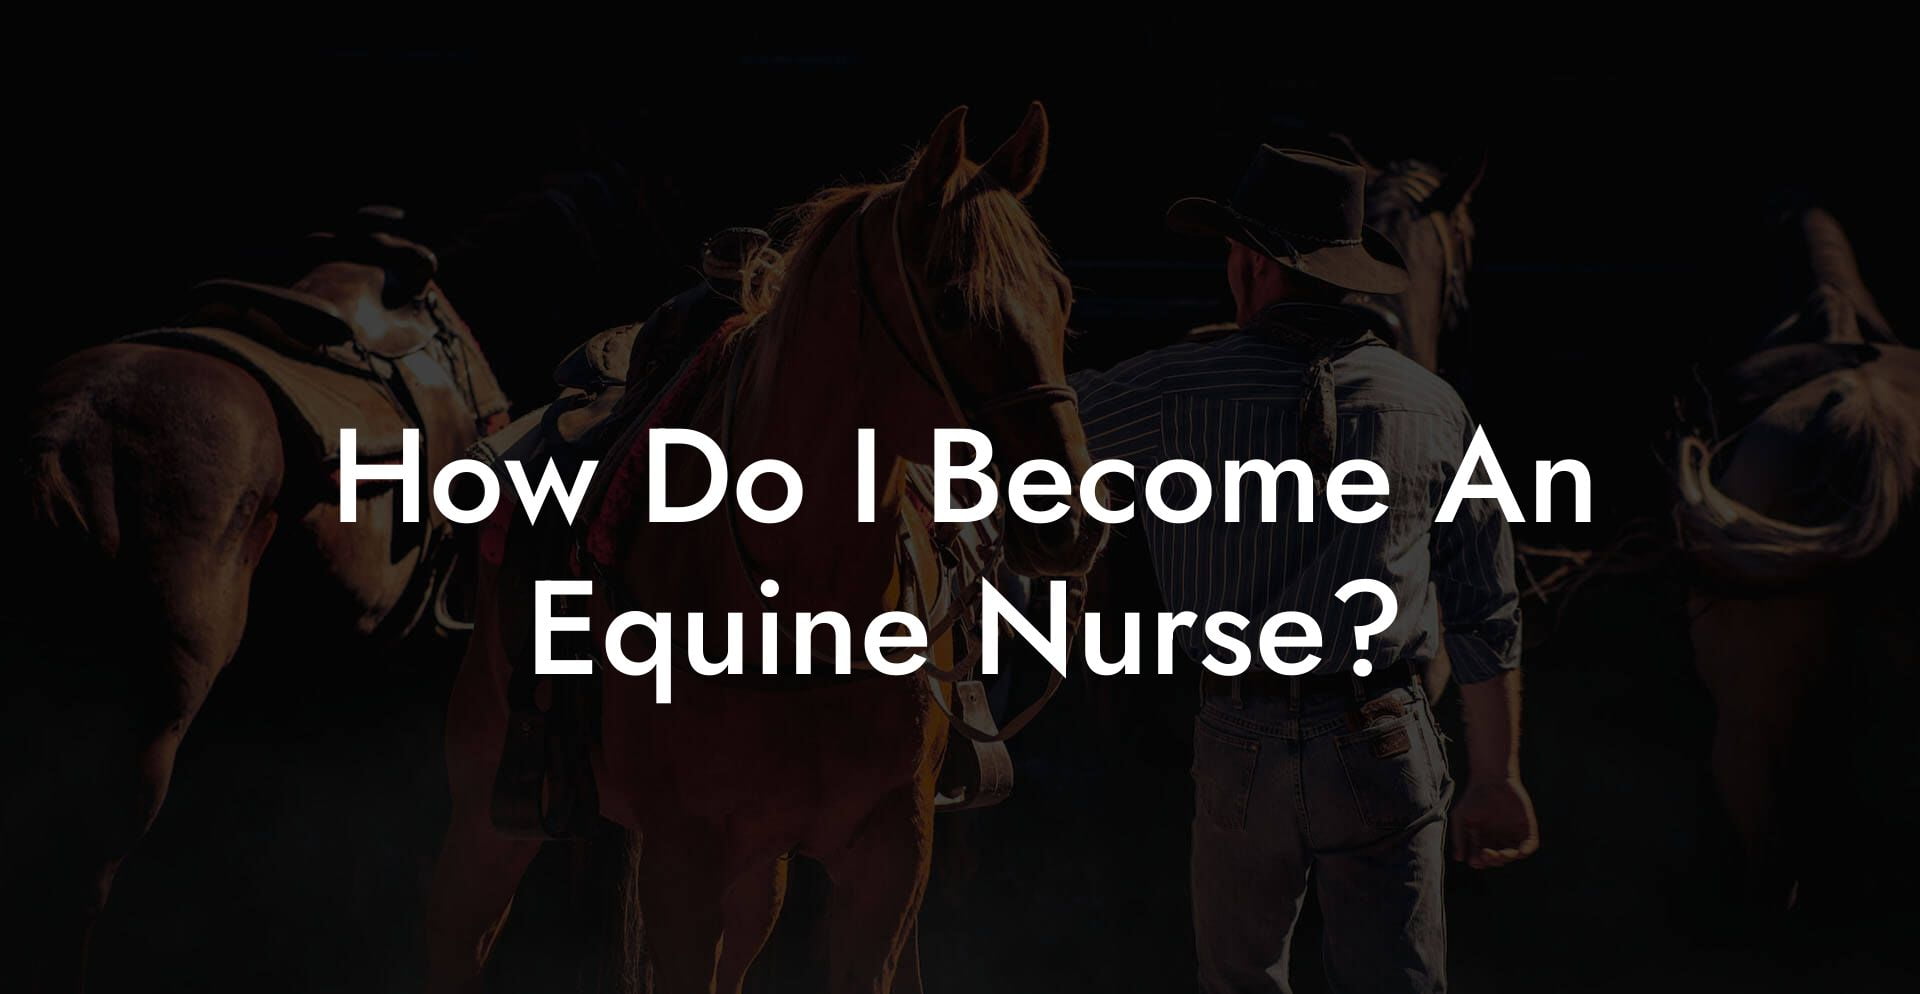 How Do I Become An Equine Nurse?